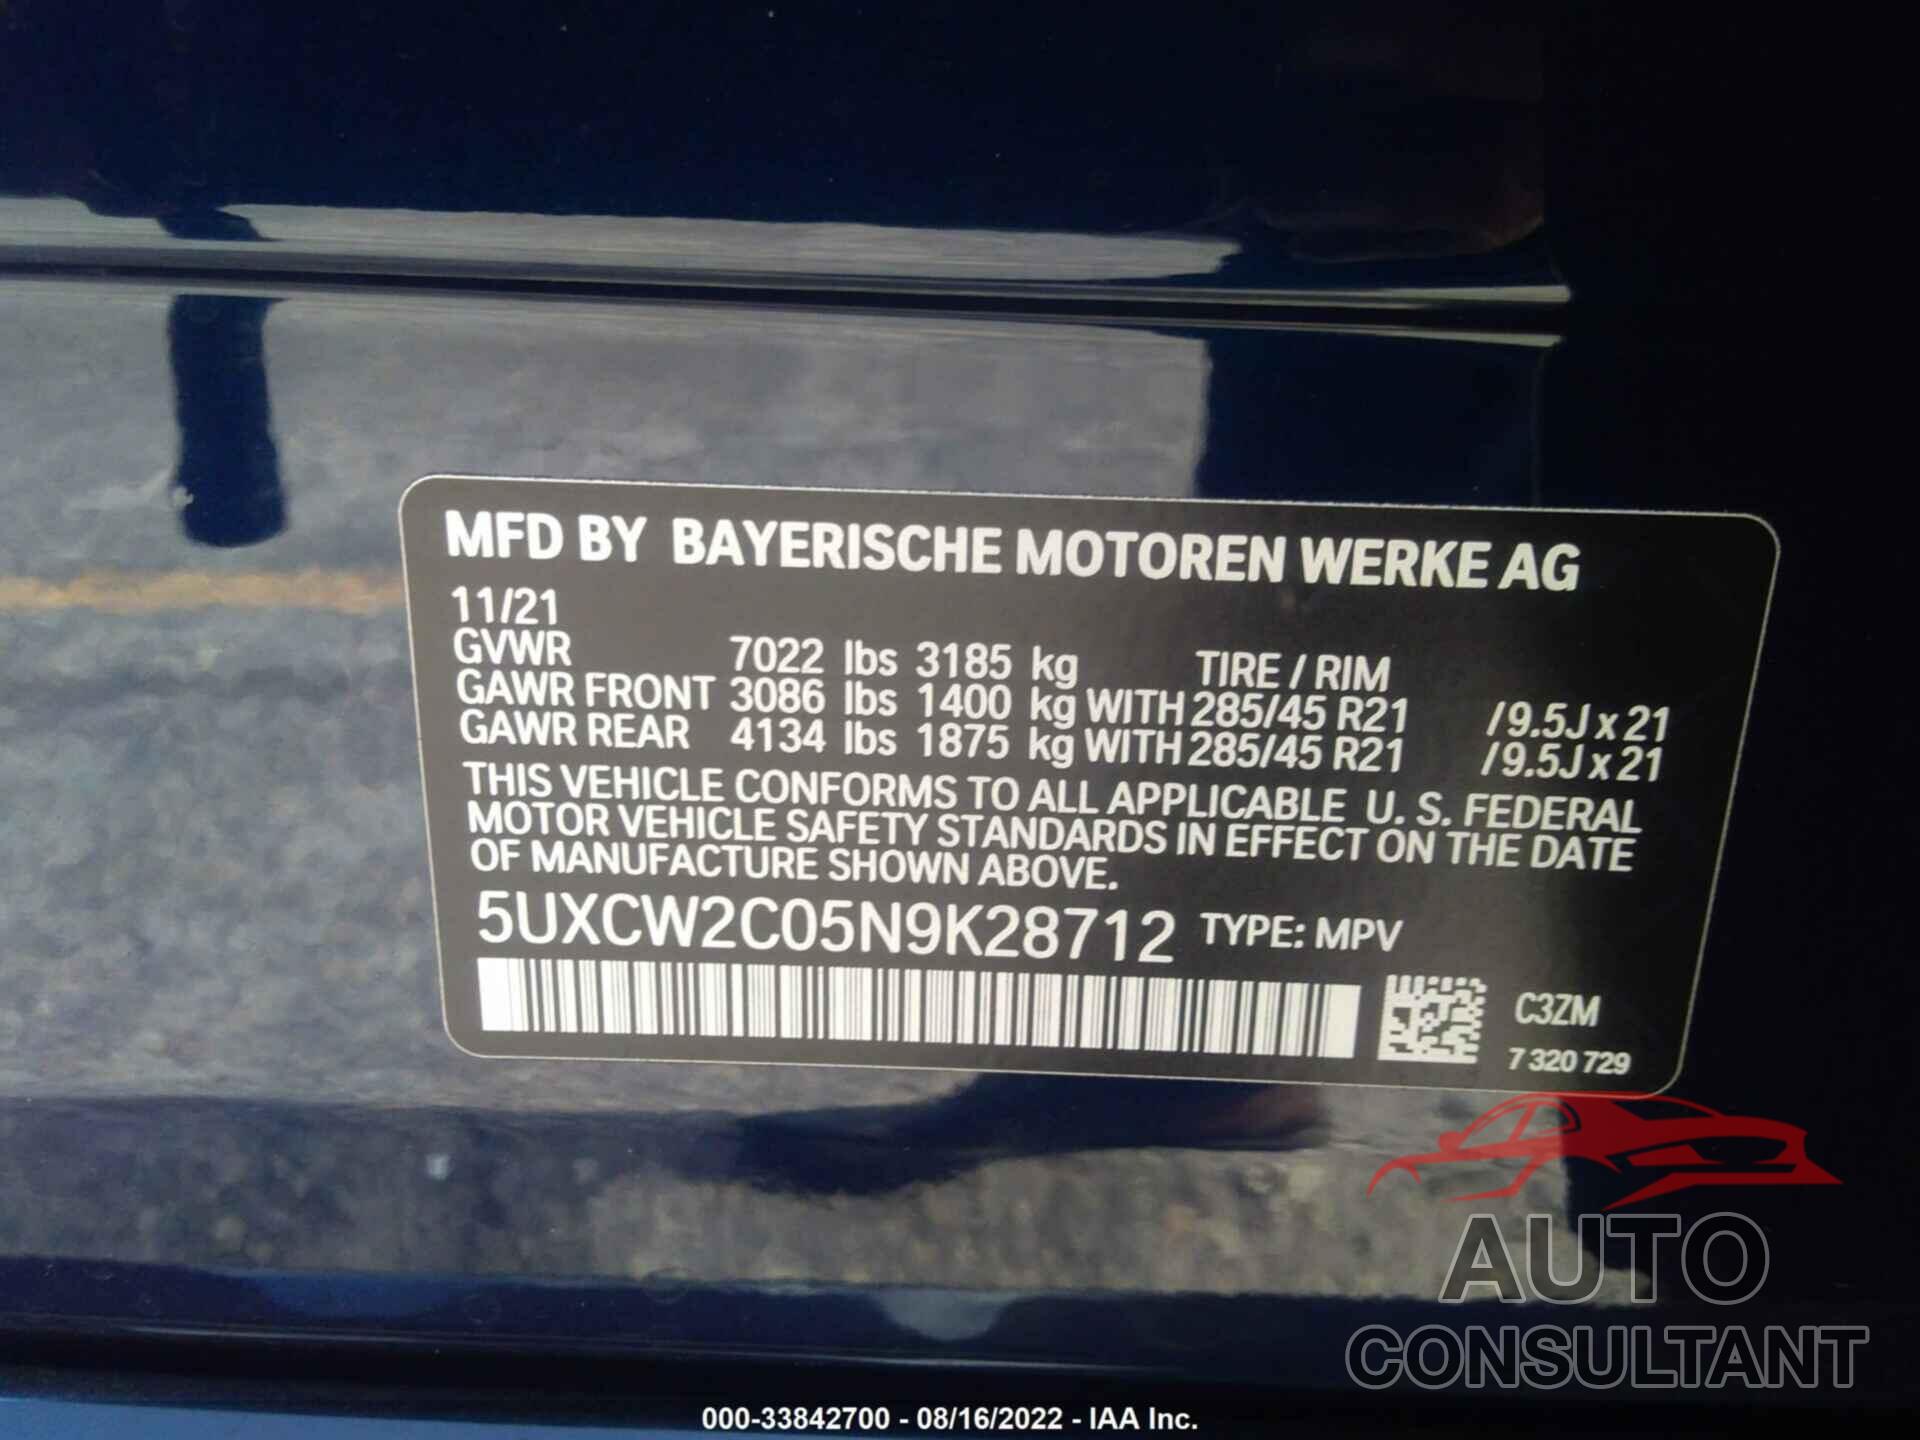 BMW X7 2022 - 5UXCW2C05N9K28712